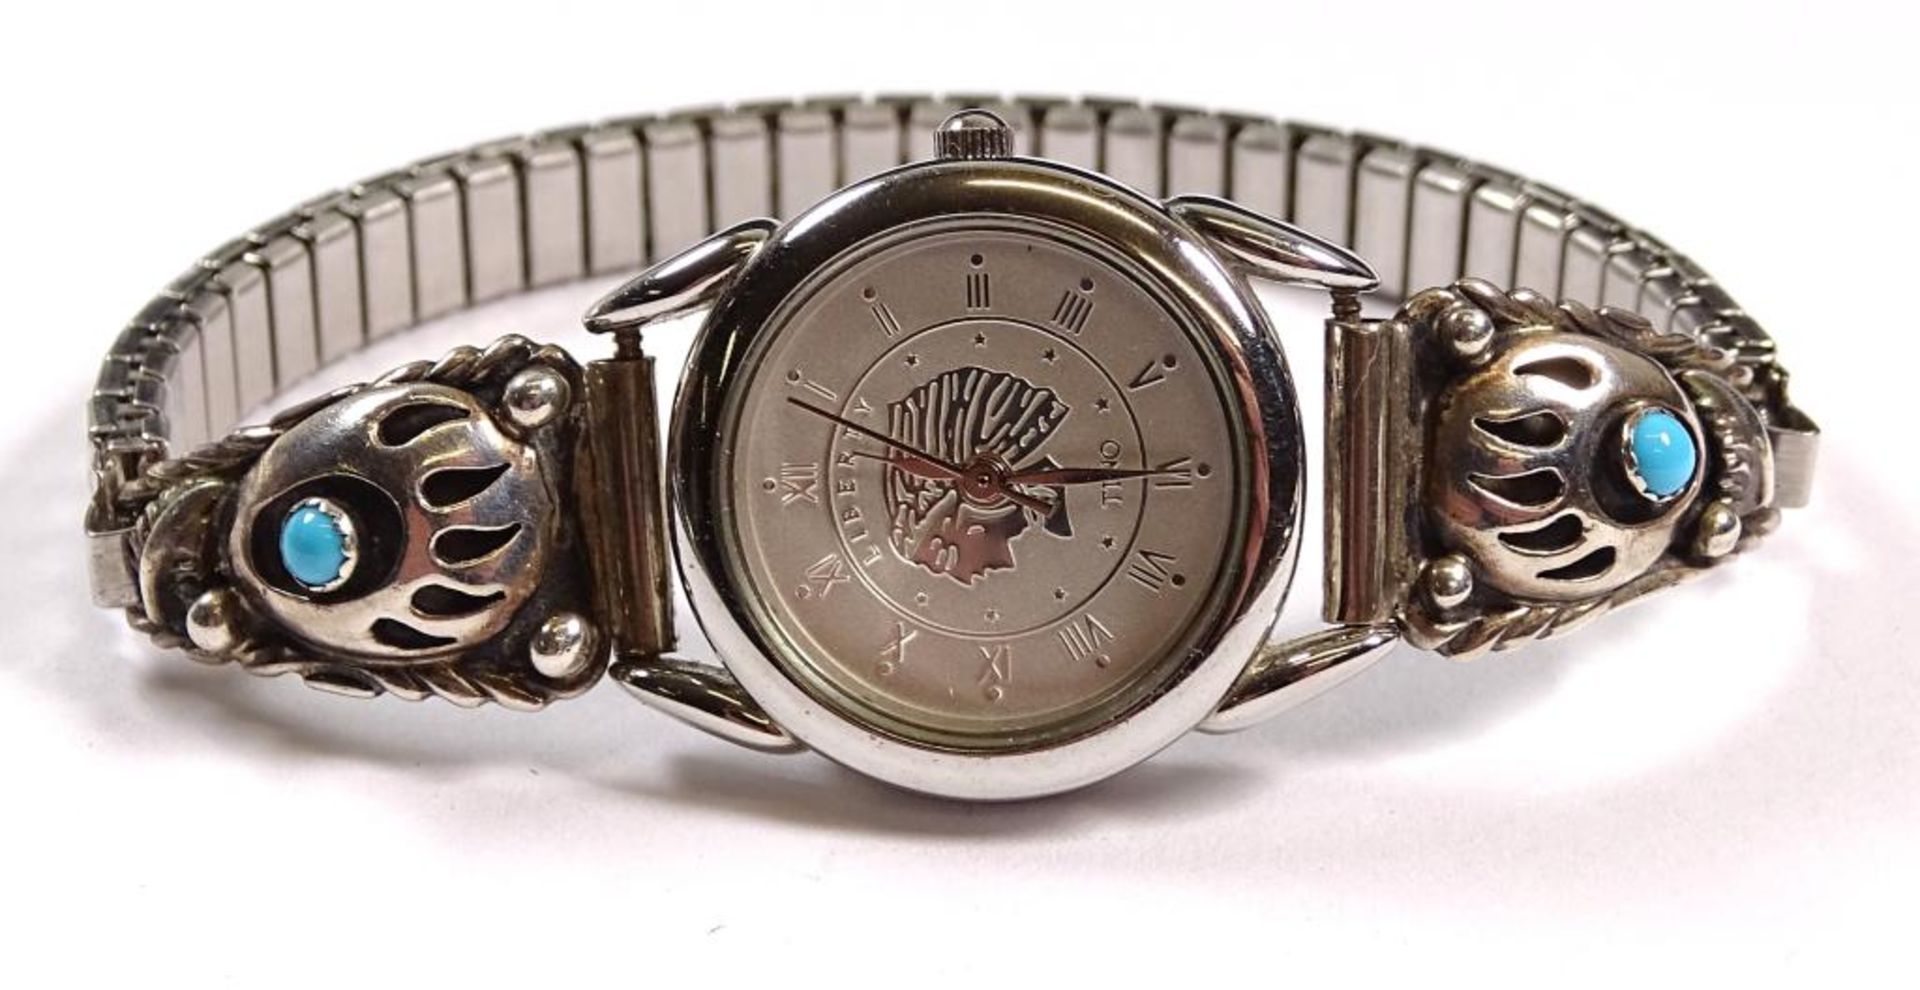 Damen Armbanduhr "Tino",Quartz,seitlich Silber mit türkisen , Band Edelstahl,derzeit läuft die